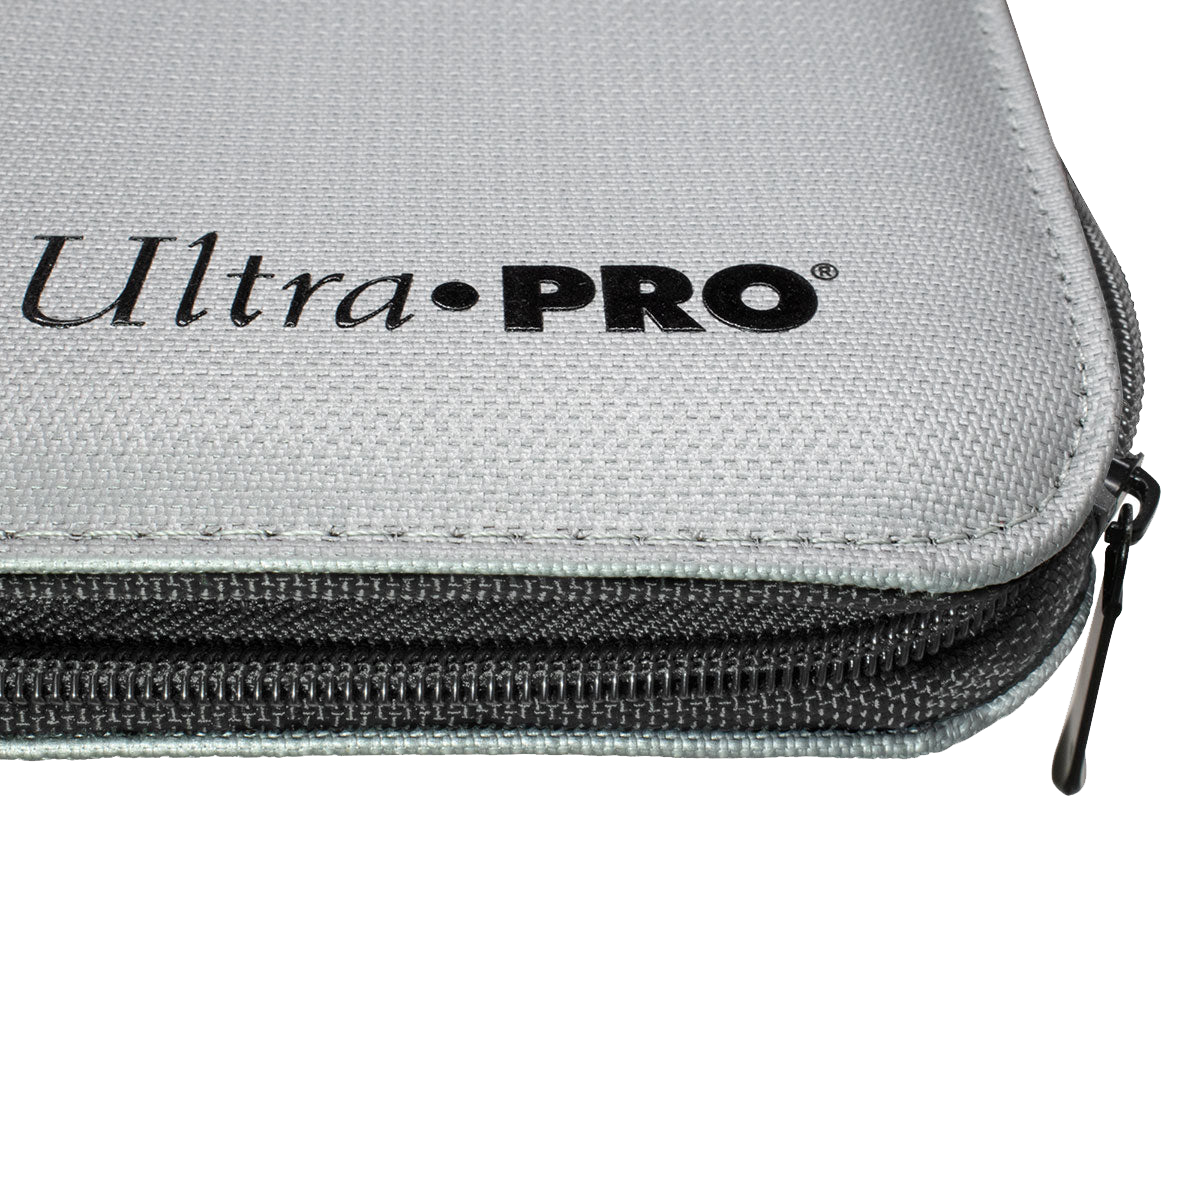 Classeur PRO 9 poches à fermeture éclair Ultra PRO : Ultra PRO  International - Classeur à 9 poches avec fermeture à glissière